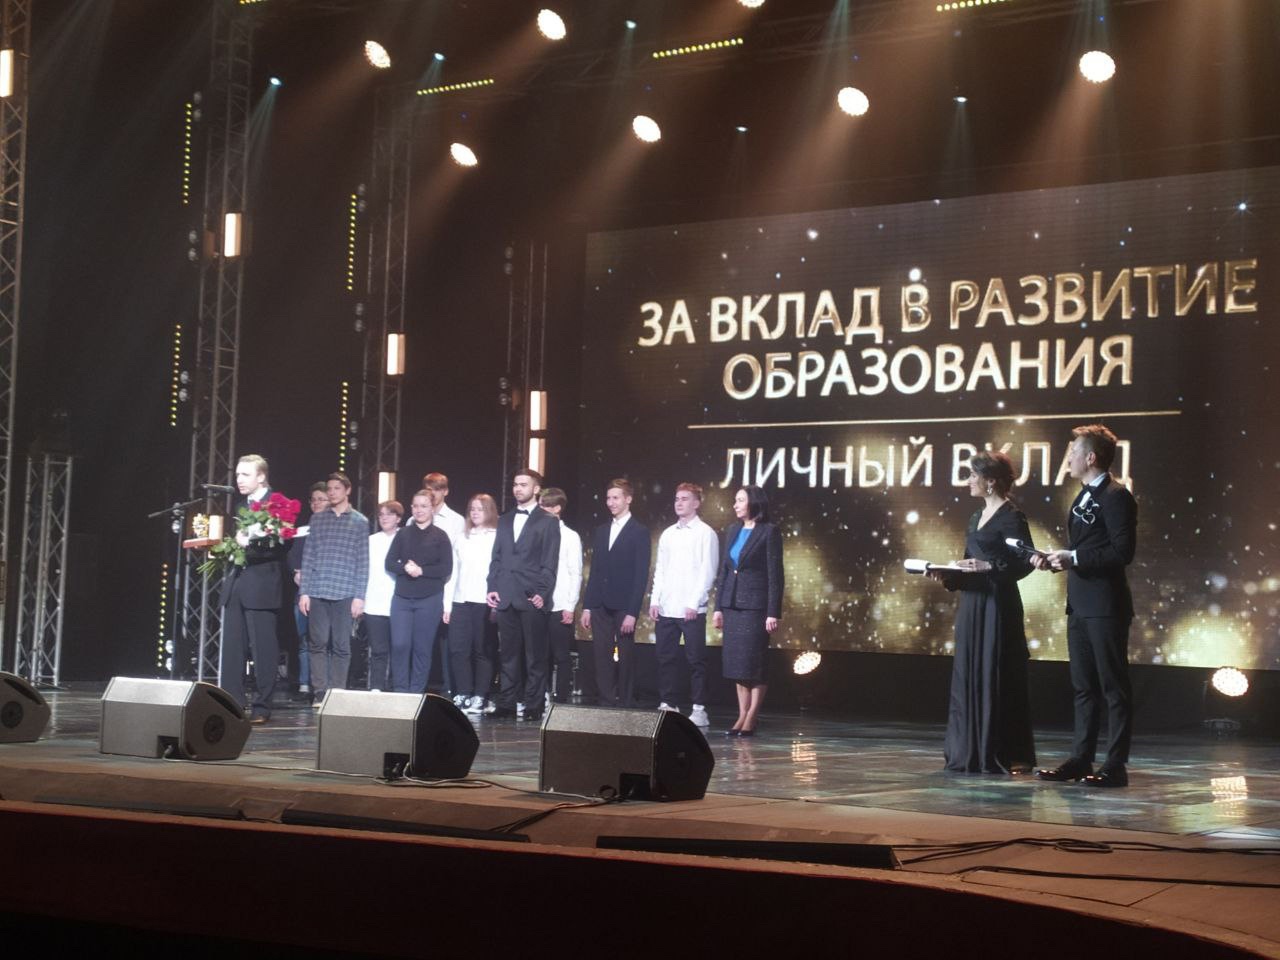 Шестеро лучших: в Челябинске вручили общественную премию "Призвание"